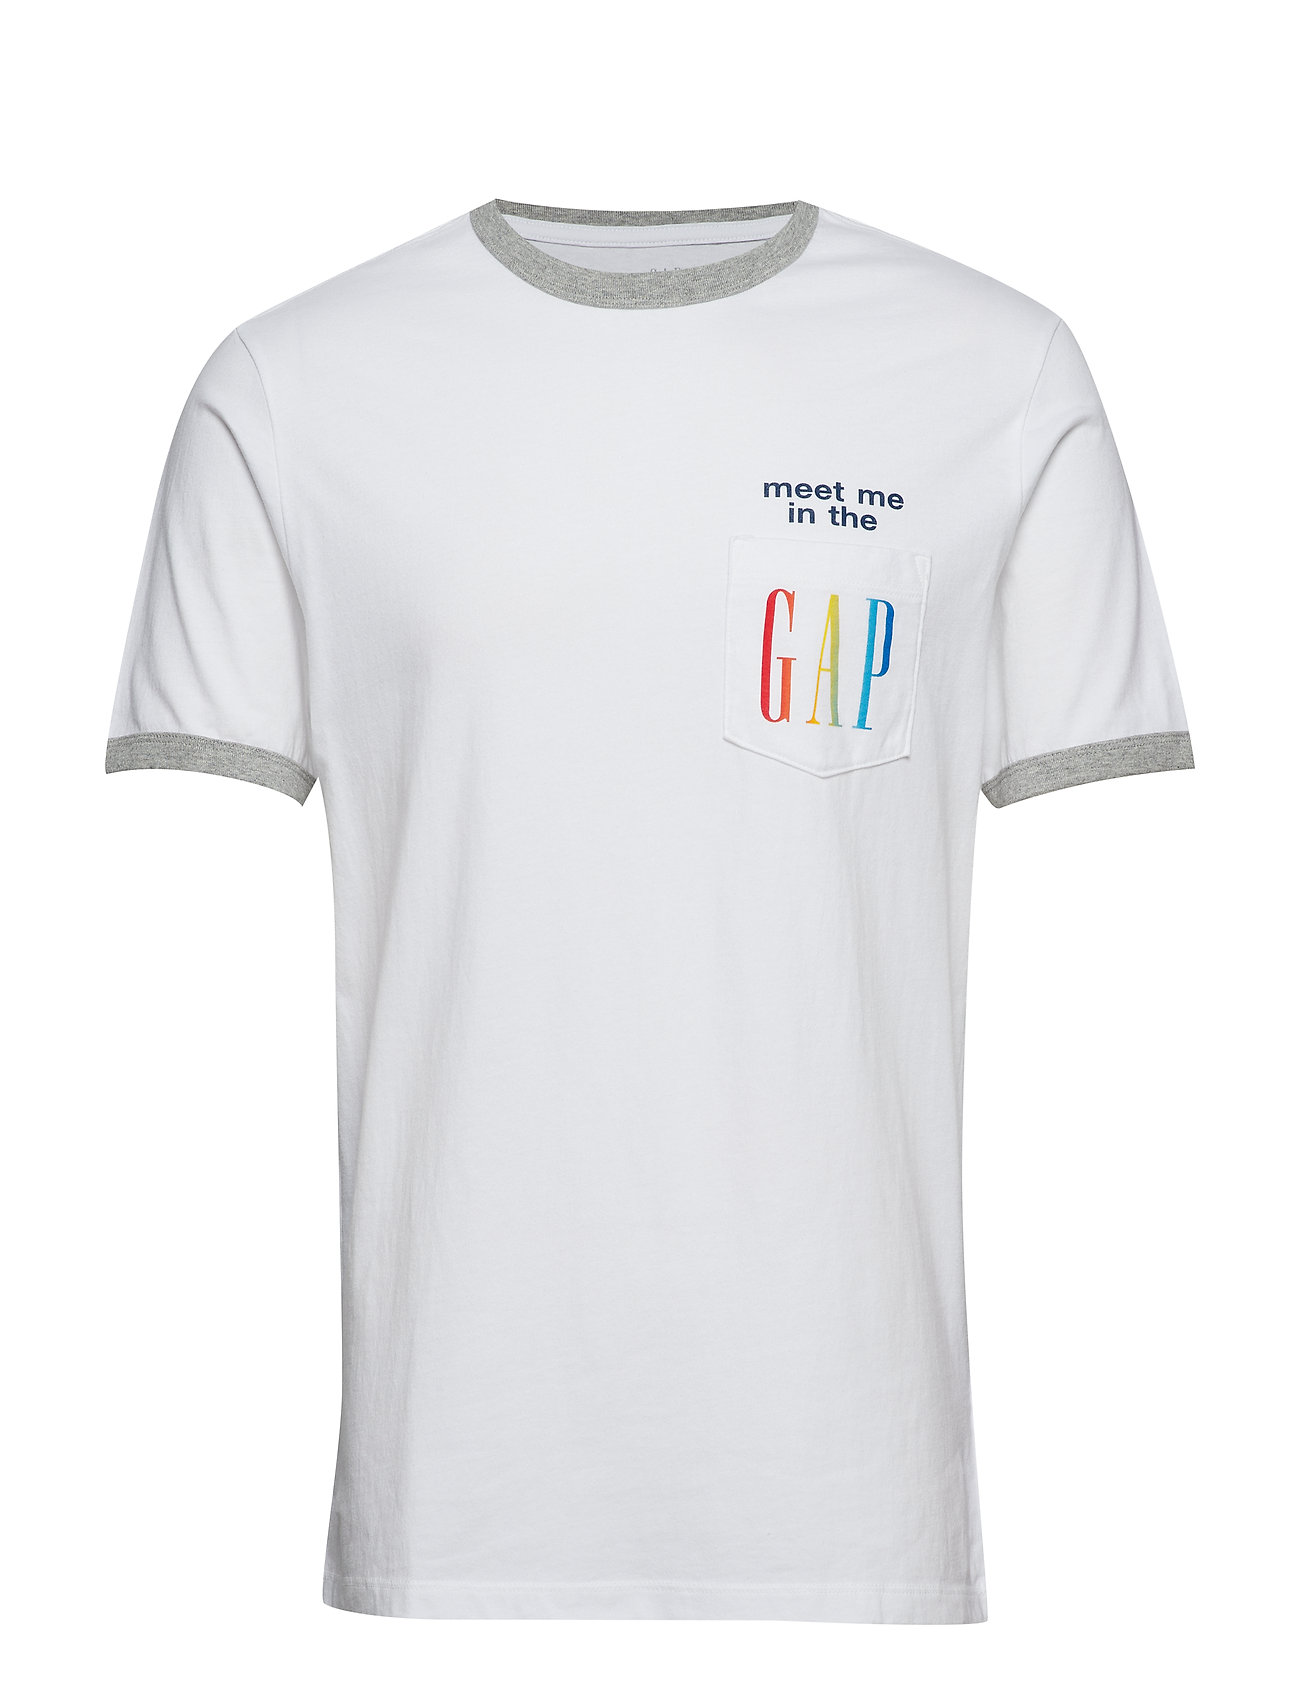 gap gay pride shirts